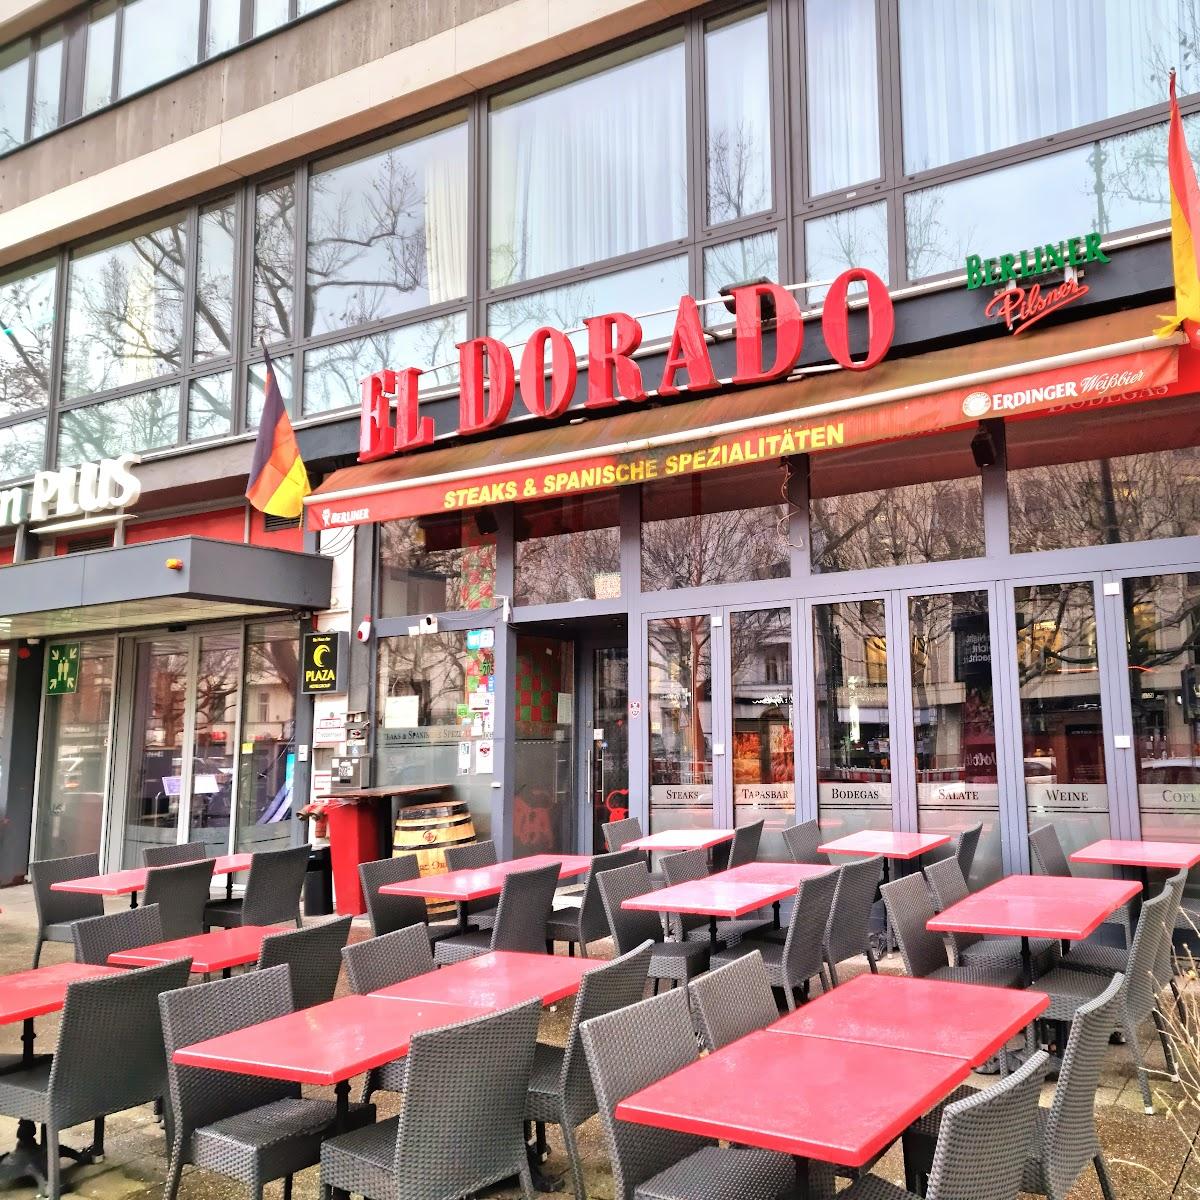 Restaurant "Restaurant El Dorado" in Berlin